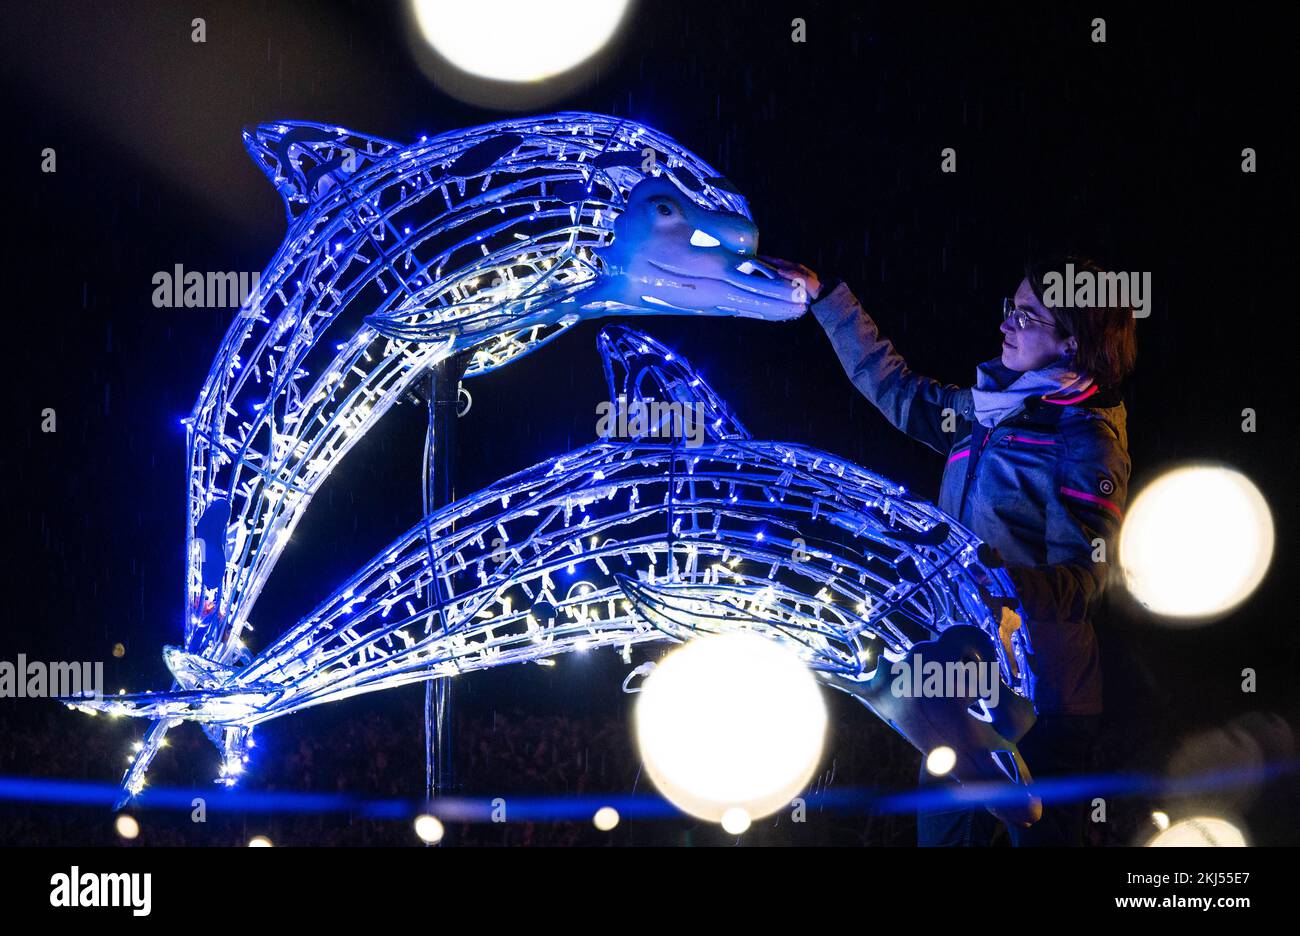 24 novembre 2022, Sassonia, Lichtenwalde: Una donna guarda due delfini illuminati nel giardino barocco del Palazzo e del Parco di Lichtenwalde durante un'anteprima dello spettacolo LUMAGICA. In un tour di circa 1,5 km, i visitatori possono sperimentare un mondo di luce invernale con più di 300 oggetti illuminati, produzioni di luce sincronizzate con la musica e elementi interattivi Il tema della messa in scena si basa sulla leggenda del cavaliere Harras, che sta cercando il suo cavallo. I visitatori camminano attraverso una foresta incantata con piante luminose e insetti nel parco del castello, entrano in un regno sottomarino segreto della Zschopa Foto Stock